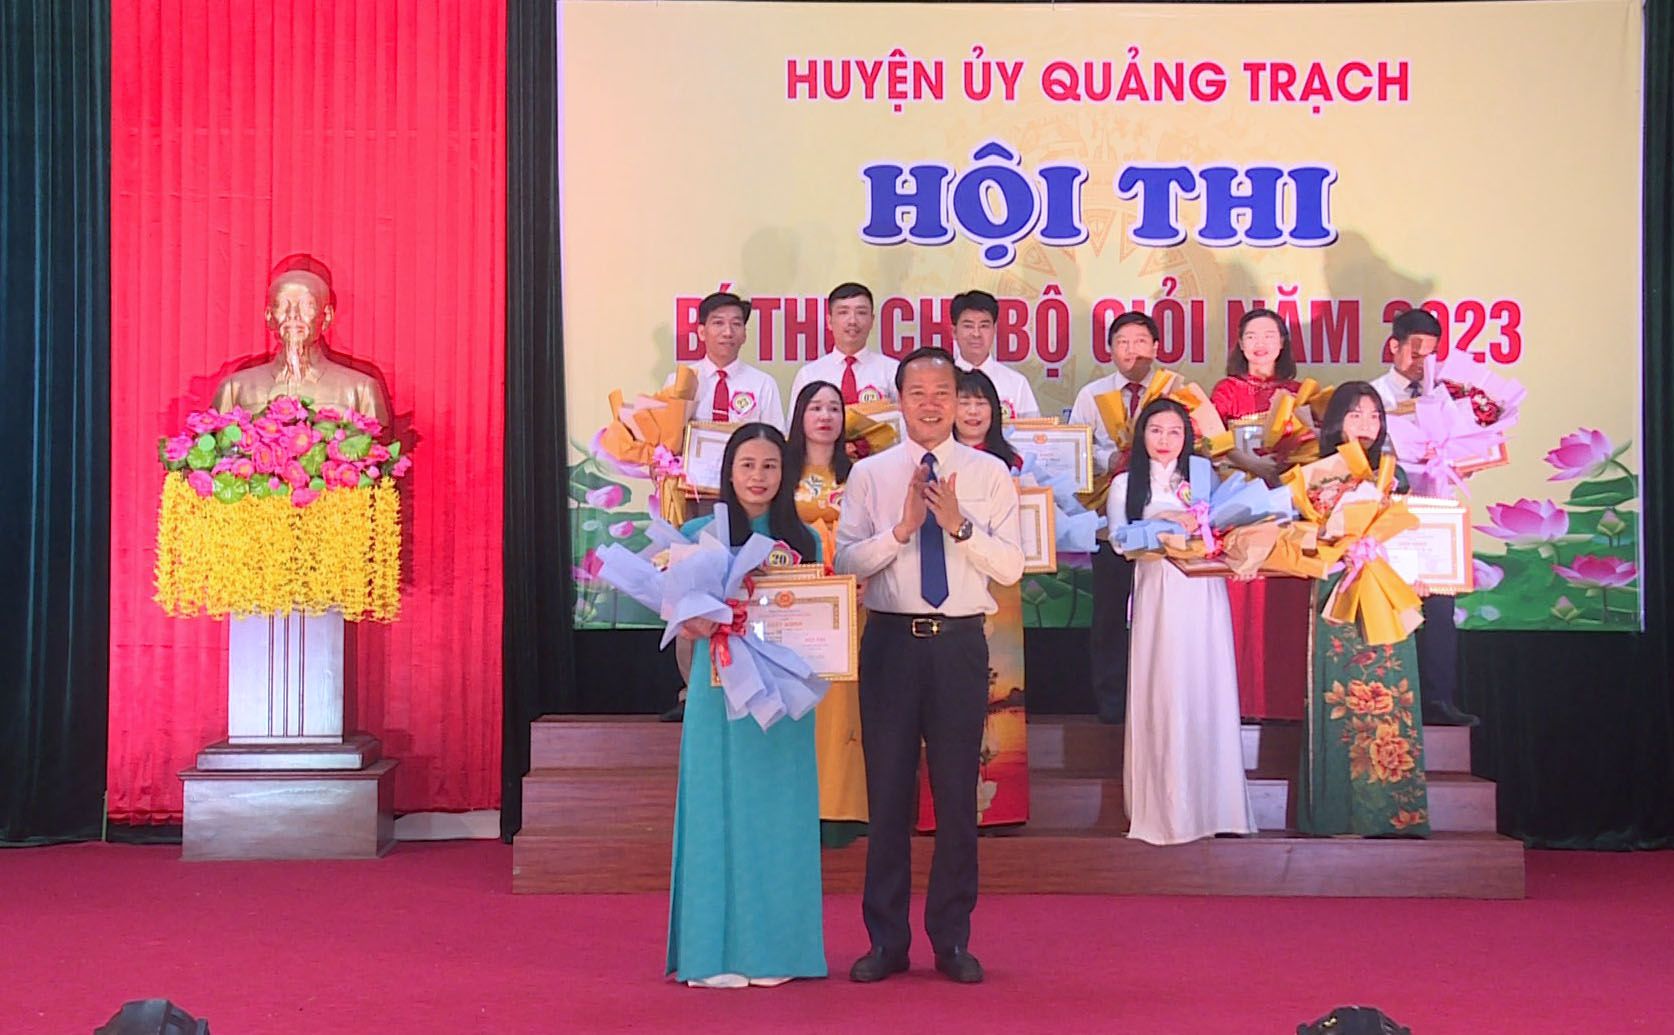 Đồng chí Nguyễn Xuân Đạt, Bí thư Huyện uỷ Quảng Trạch trao giải nhất cho thí sinh Bùi Thị Nhàn.